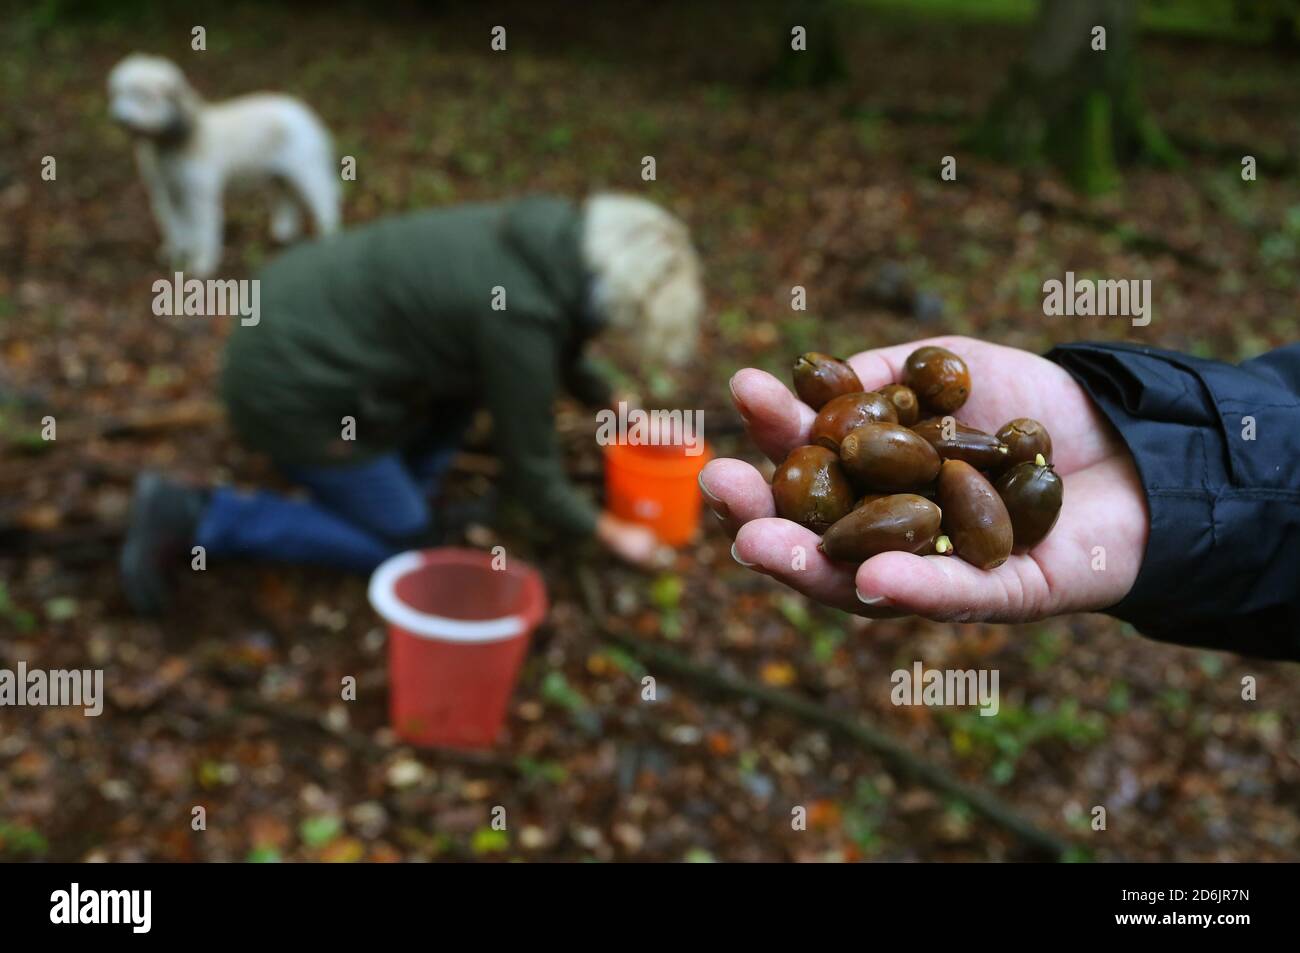 Rothenbuch, Germania. 16 Ott 2020. Karin Stenger mostra ghiande appena  raccolte in una foresta di querce nel Hochspessart, mentre Carmen Krank  raccoglie ghiande dal pavimento della foresta. Le ghiande sono usate per